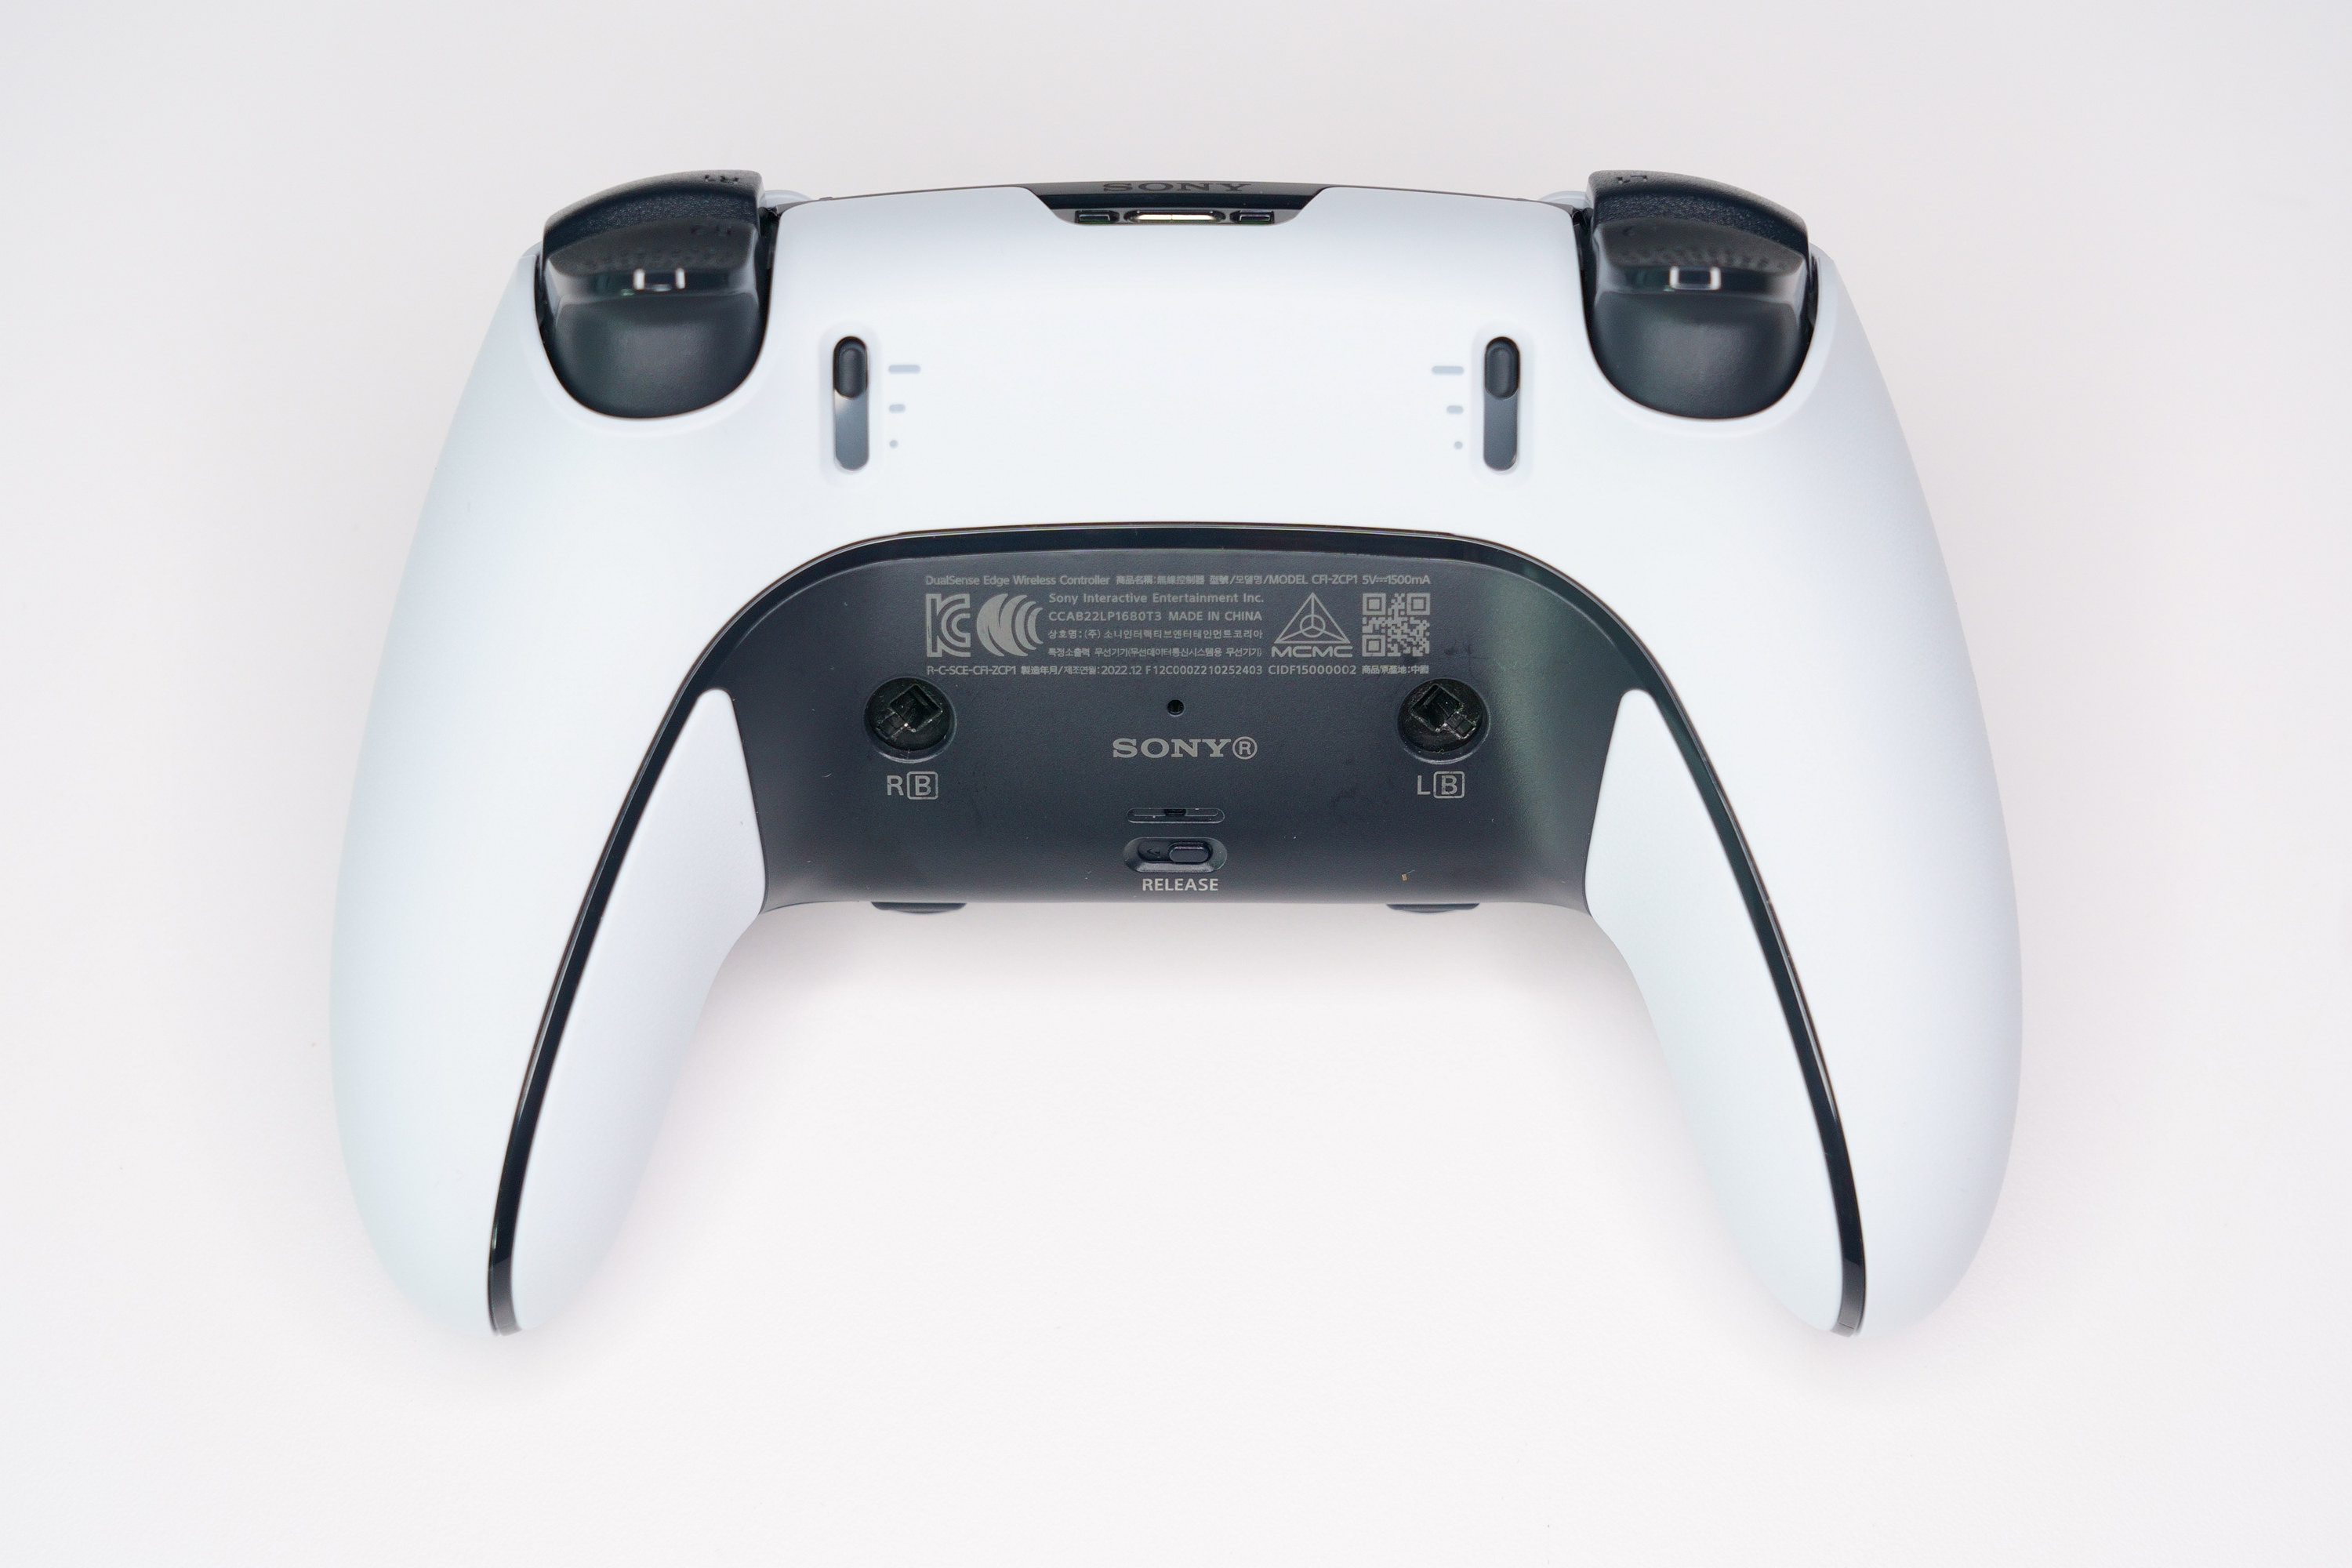 PS5 DualSense Edge 高效能控制器一手开箱 丰富自订功能满足各类型玩家需求插图18